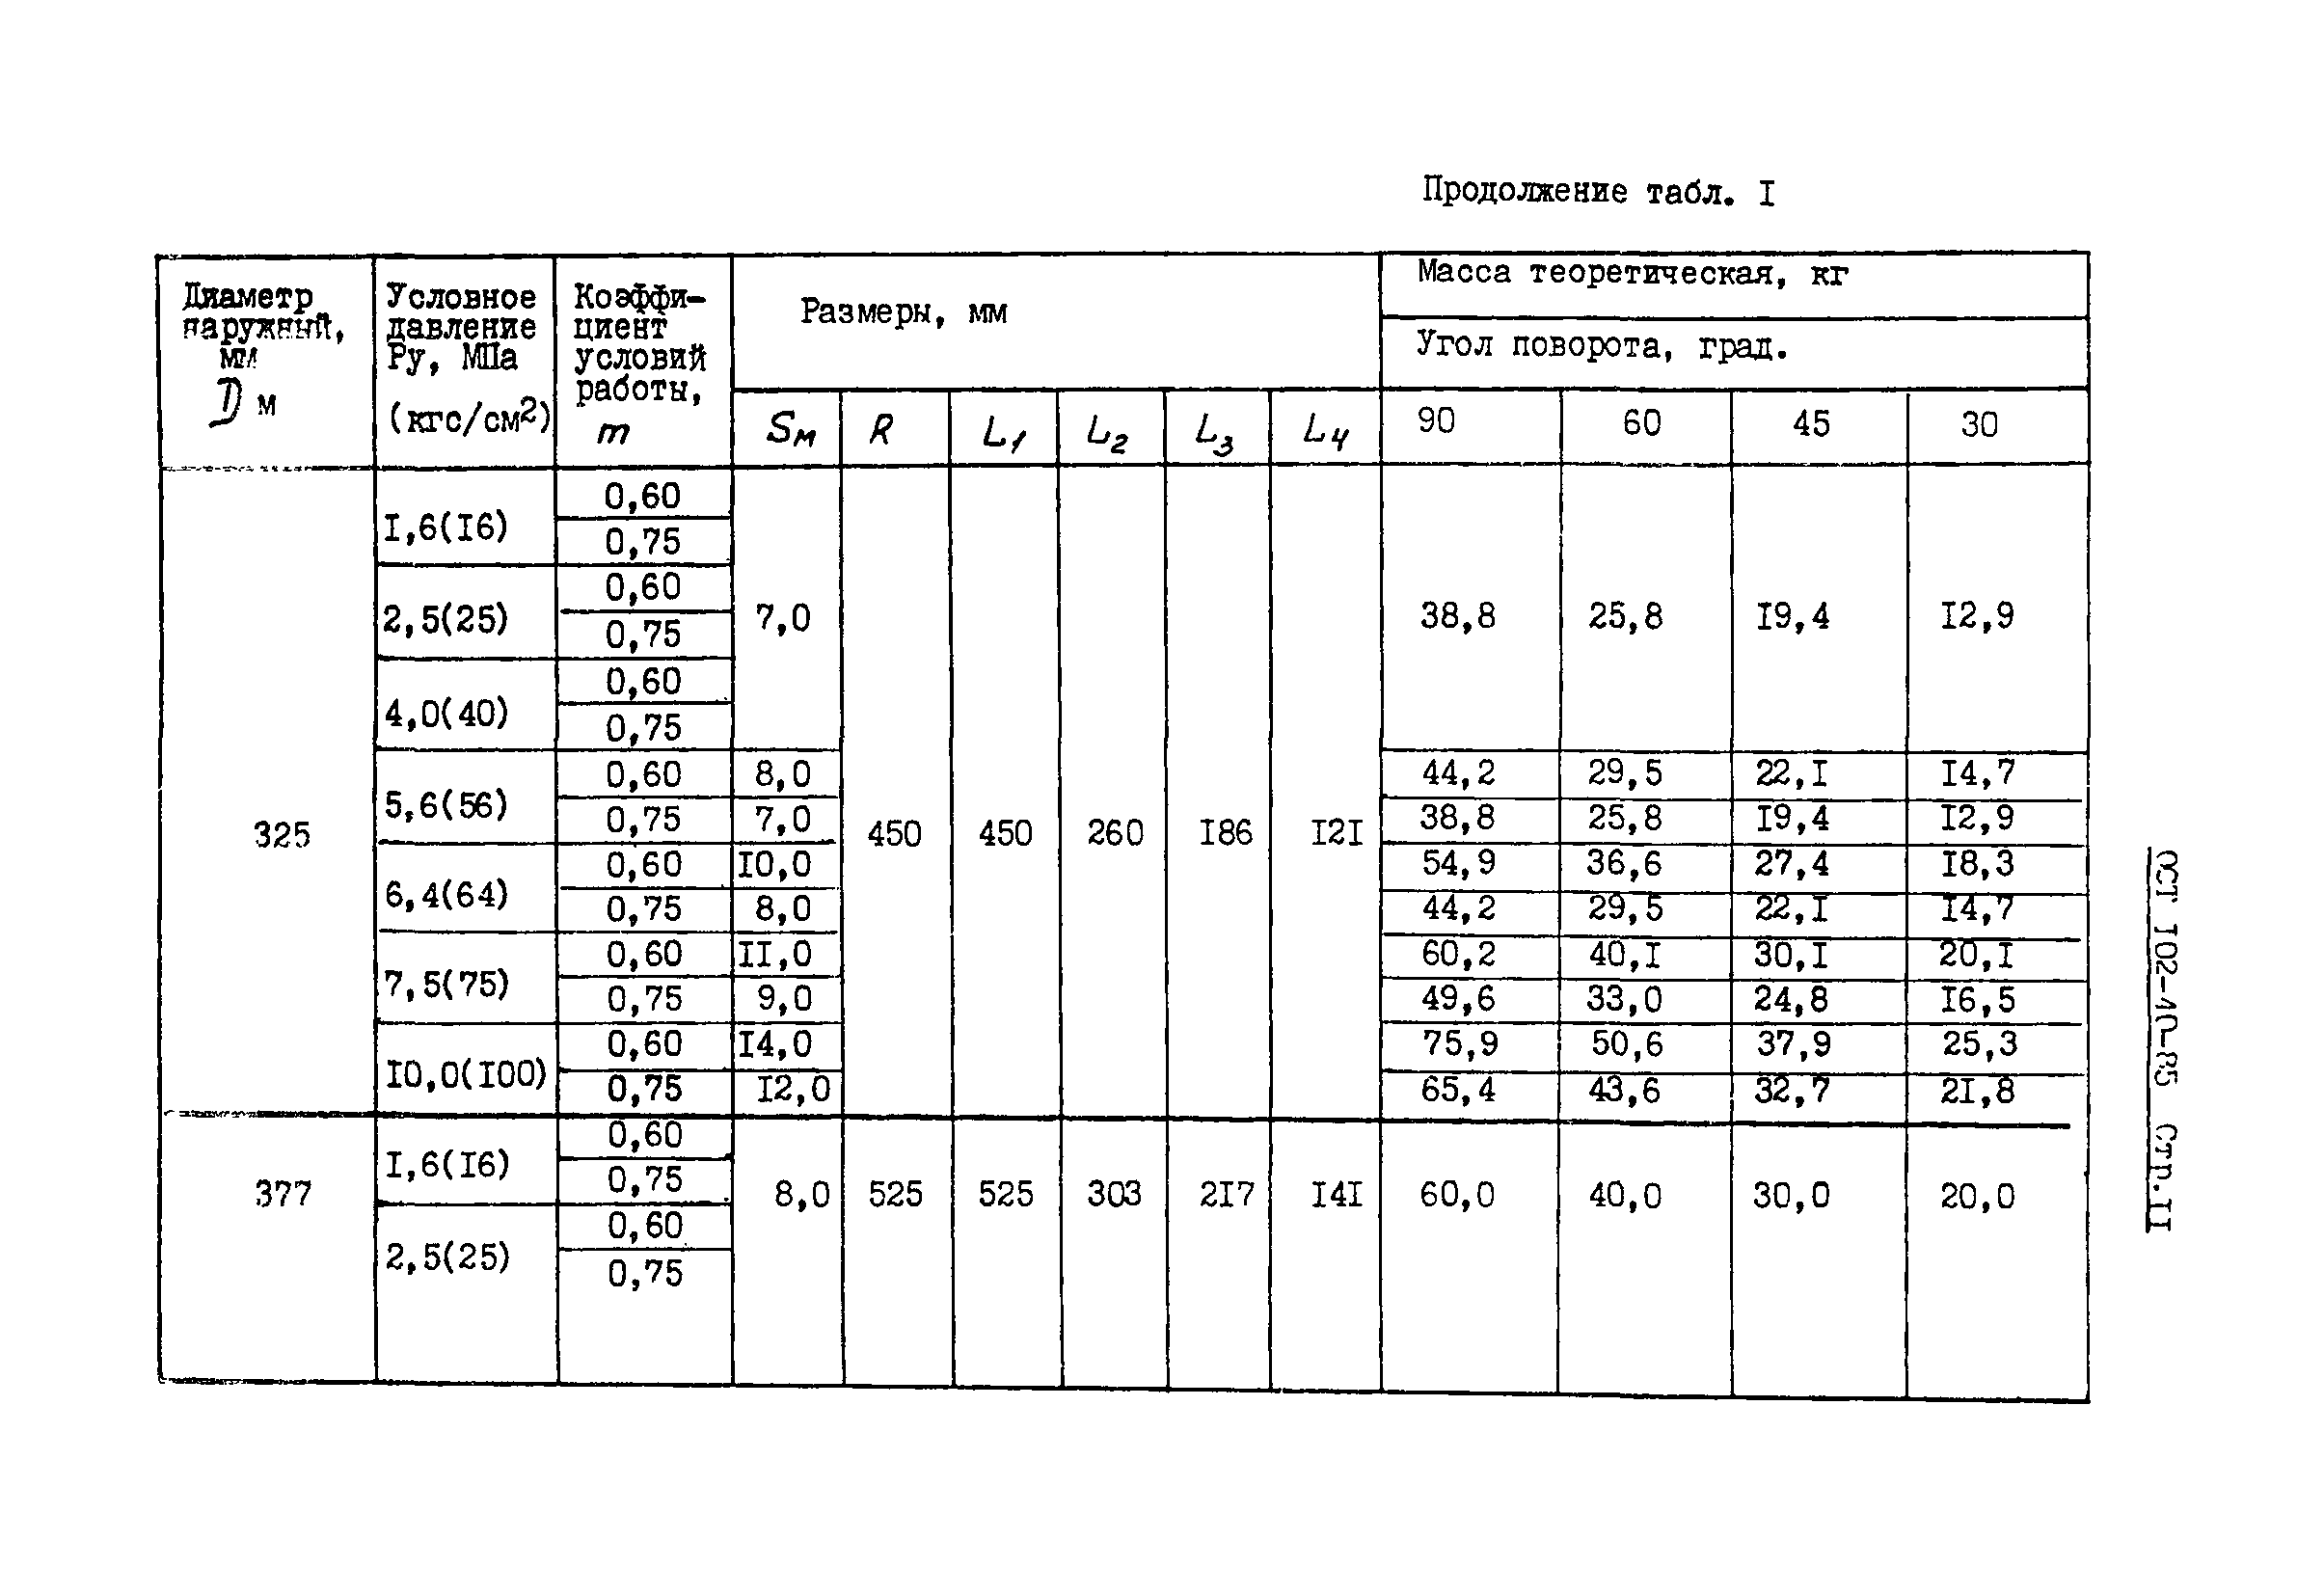 ОСТ 102-40-85